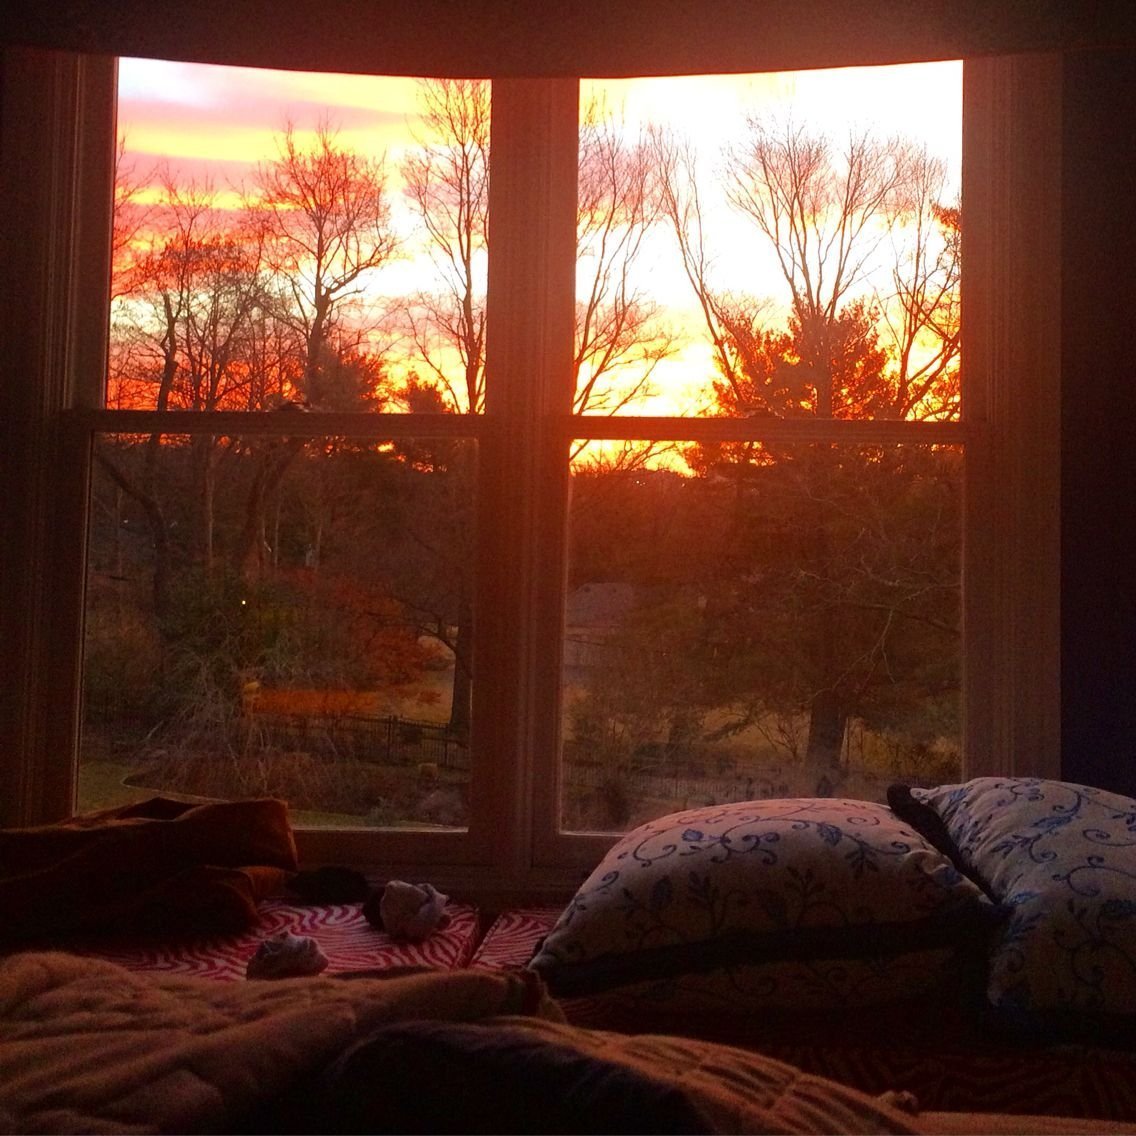 Ранний вечер время. Уютная комната. Уютная комнатка с окном. Комната с закатом в окне. Вид из окна рассвет.